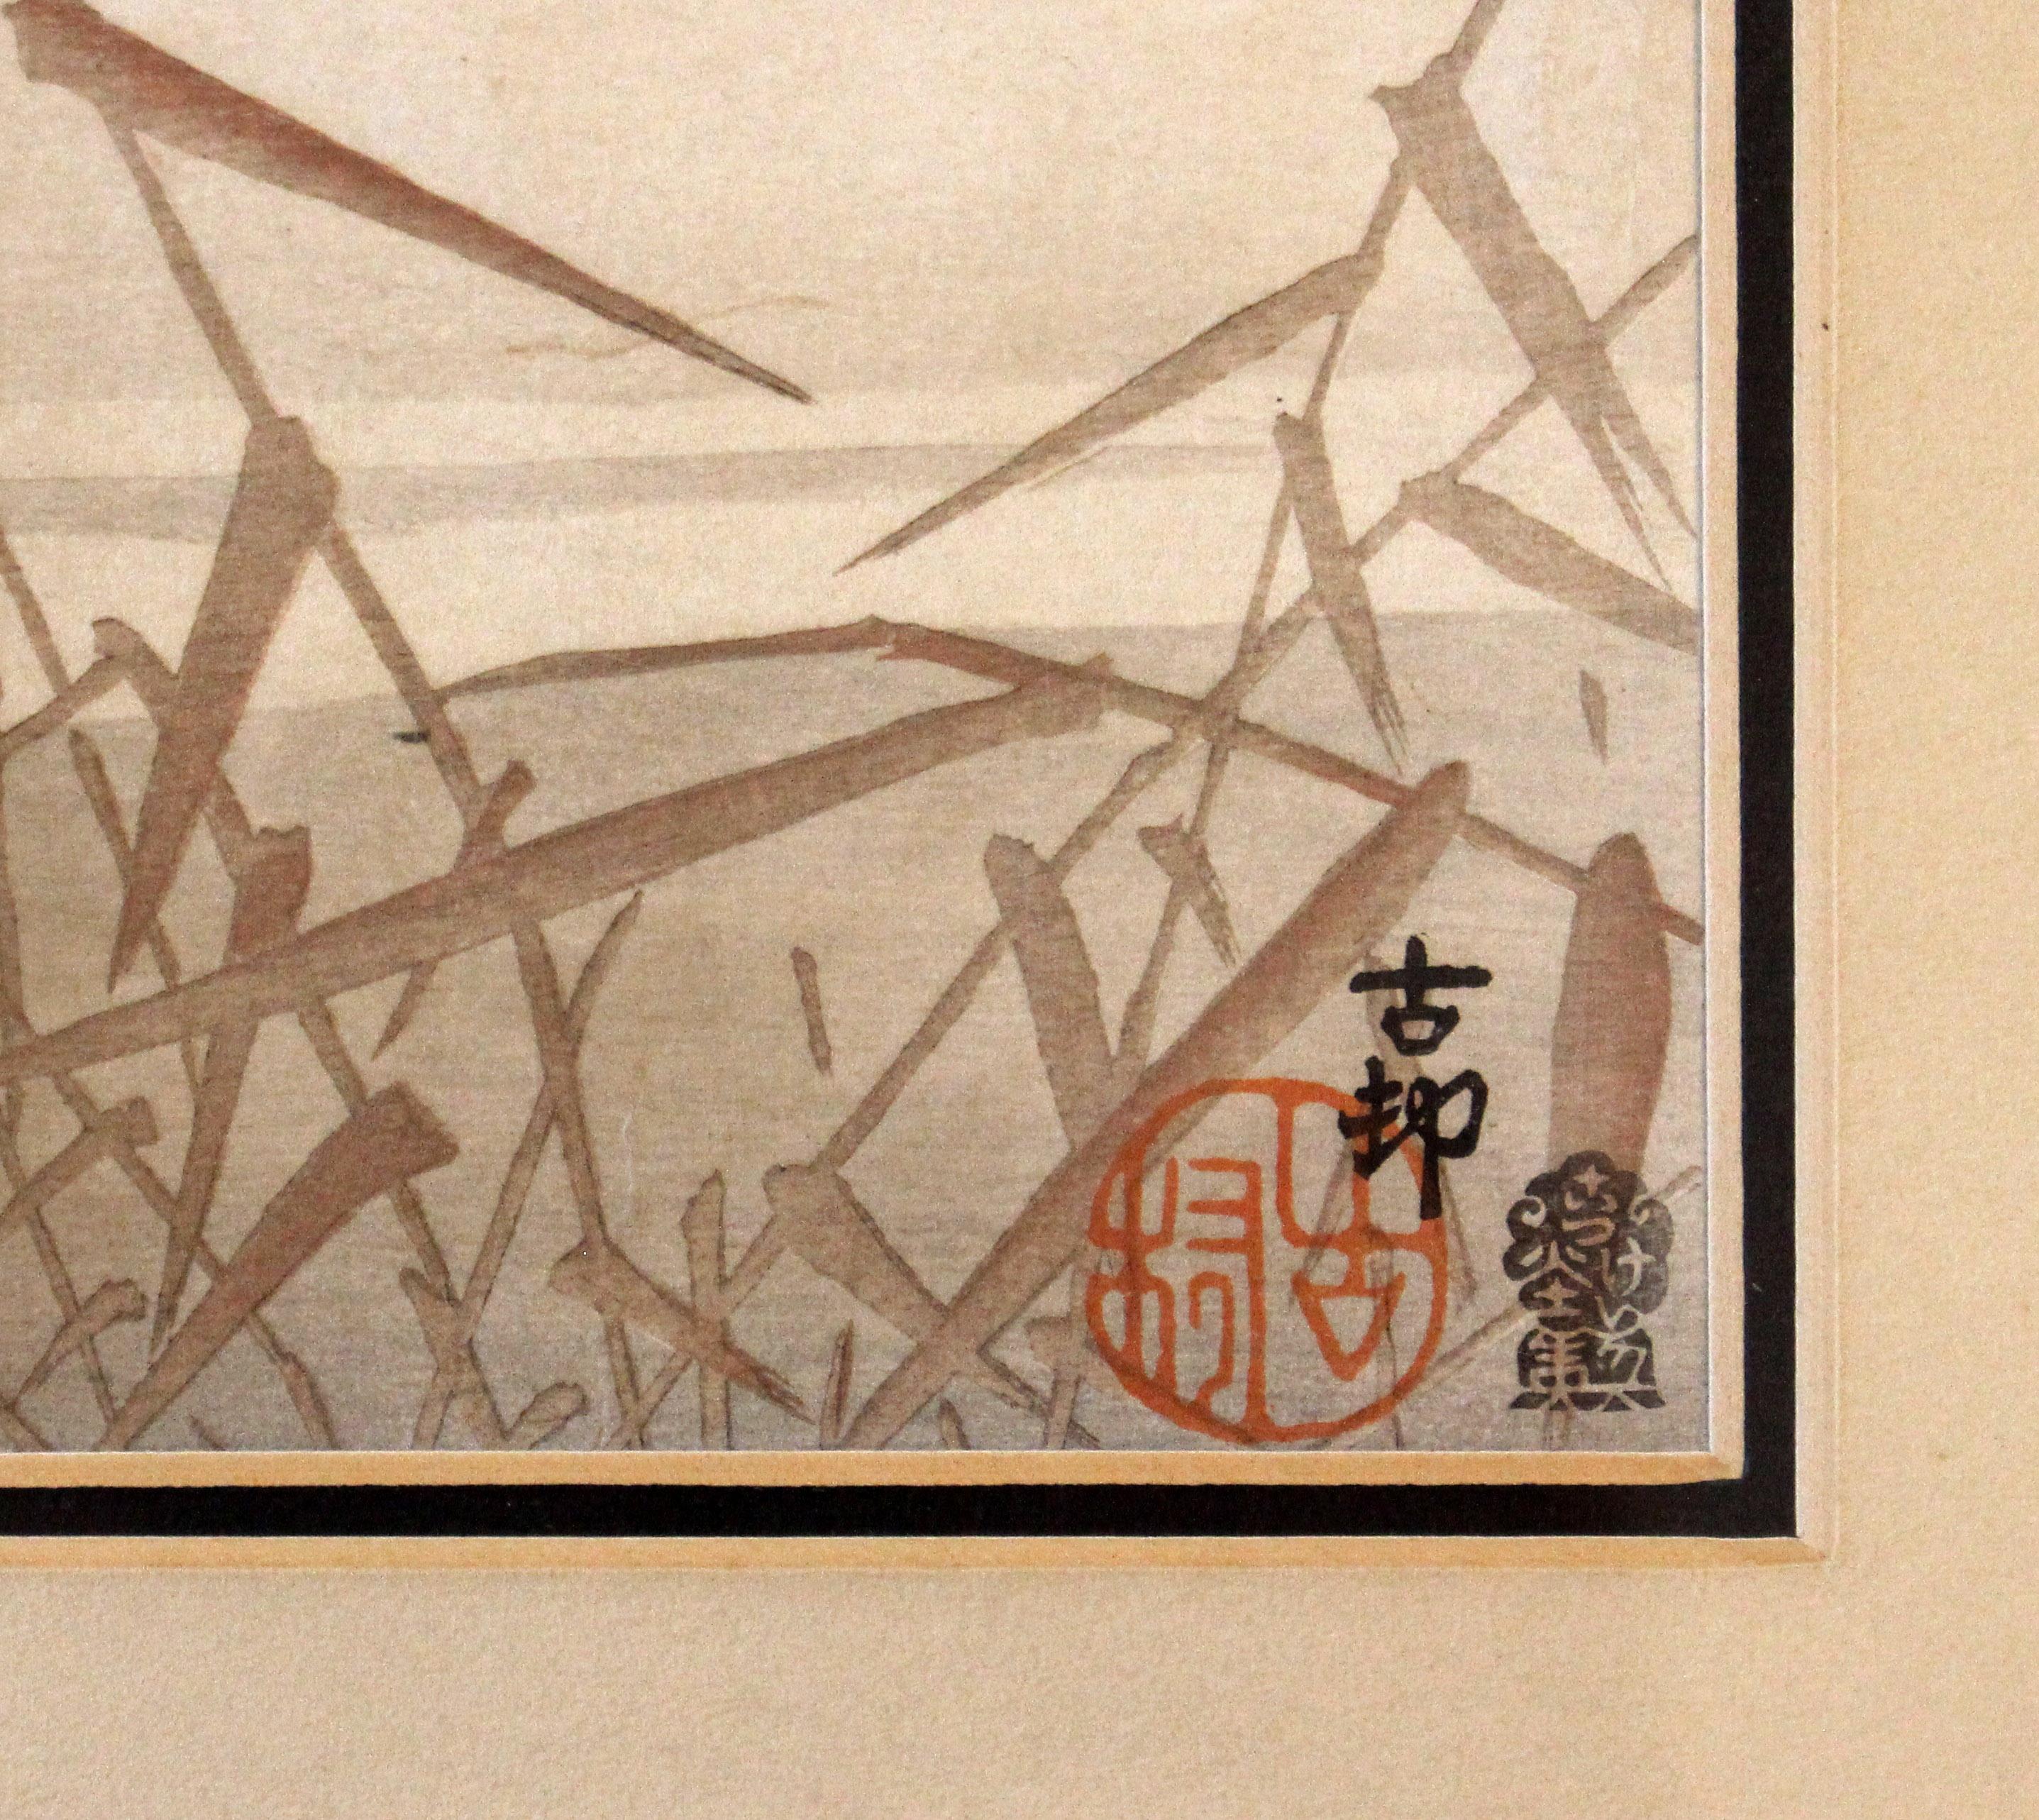 Circa 1920s Japanese woodblock print 